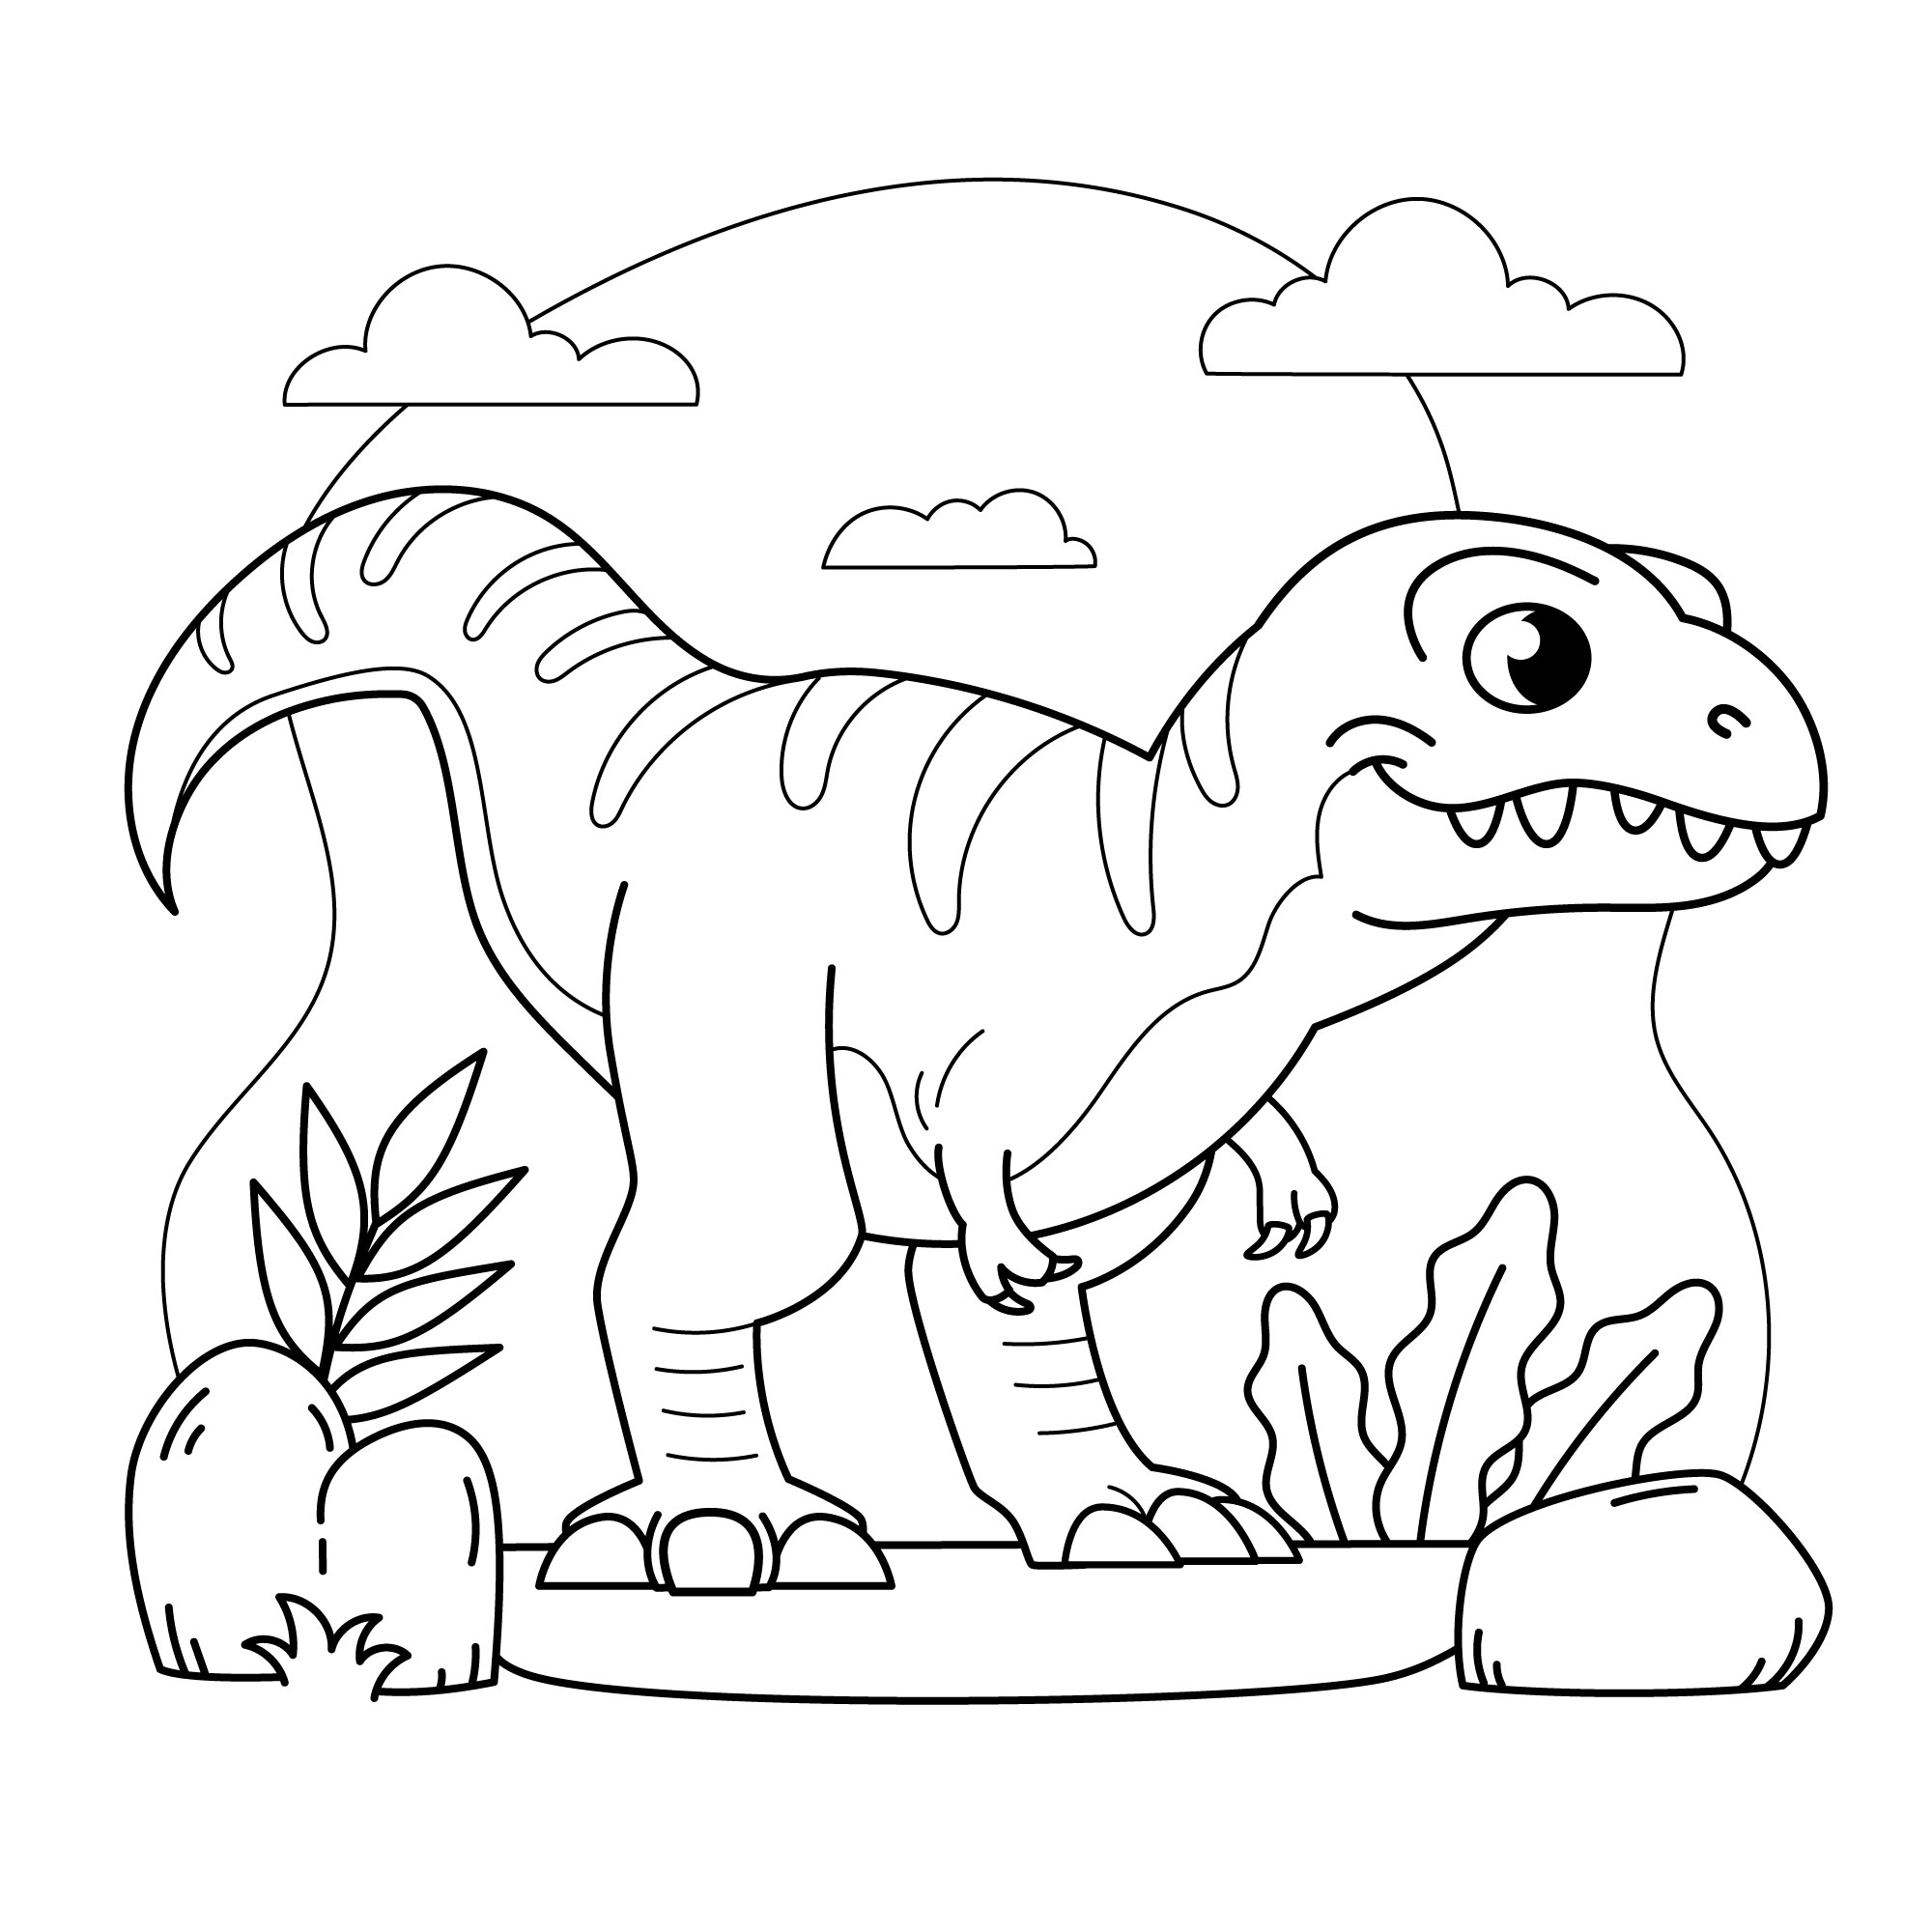 Раскраска динозавр тиранозавр на охоте формата А4 в высоком качестве